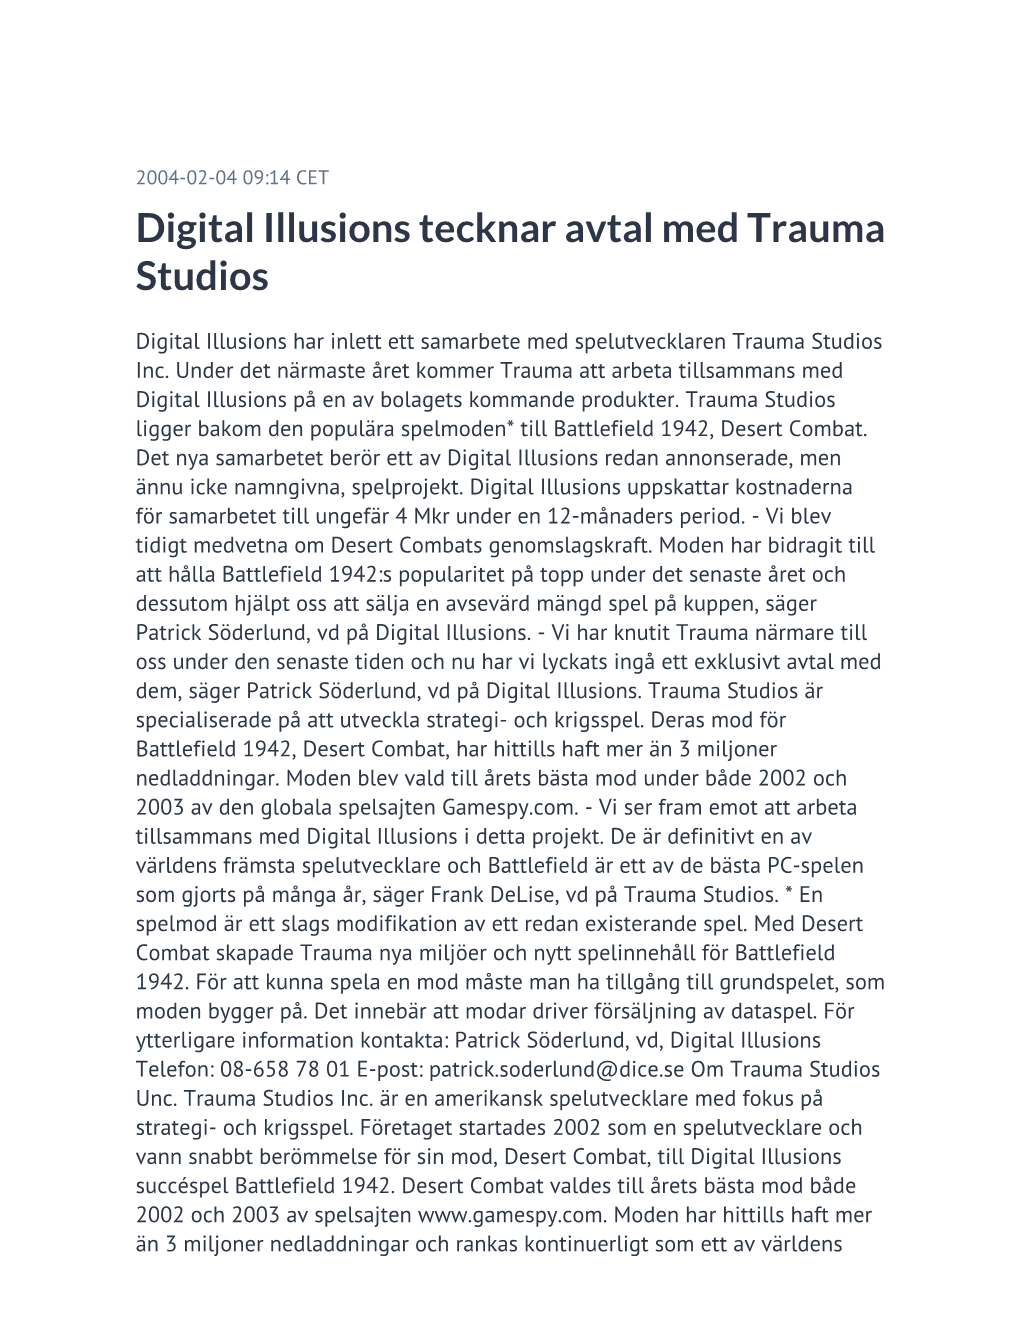 Digital Illusions Tecknar Avtal Med Trauma Studios